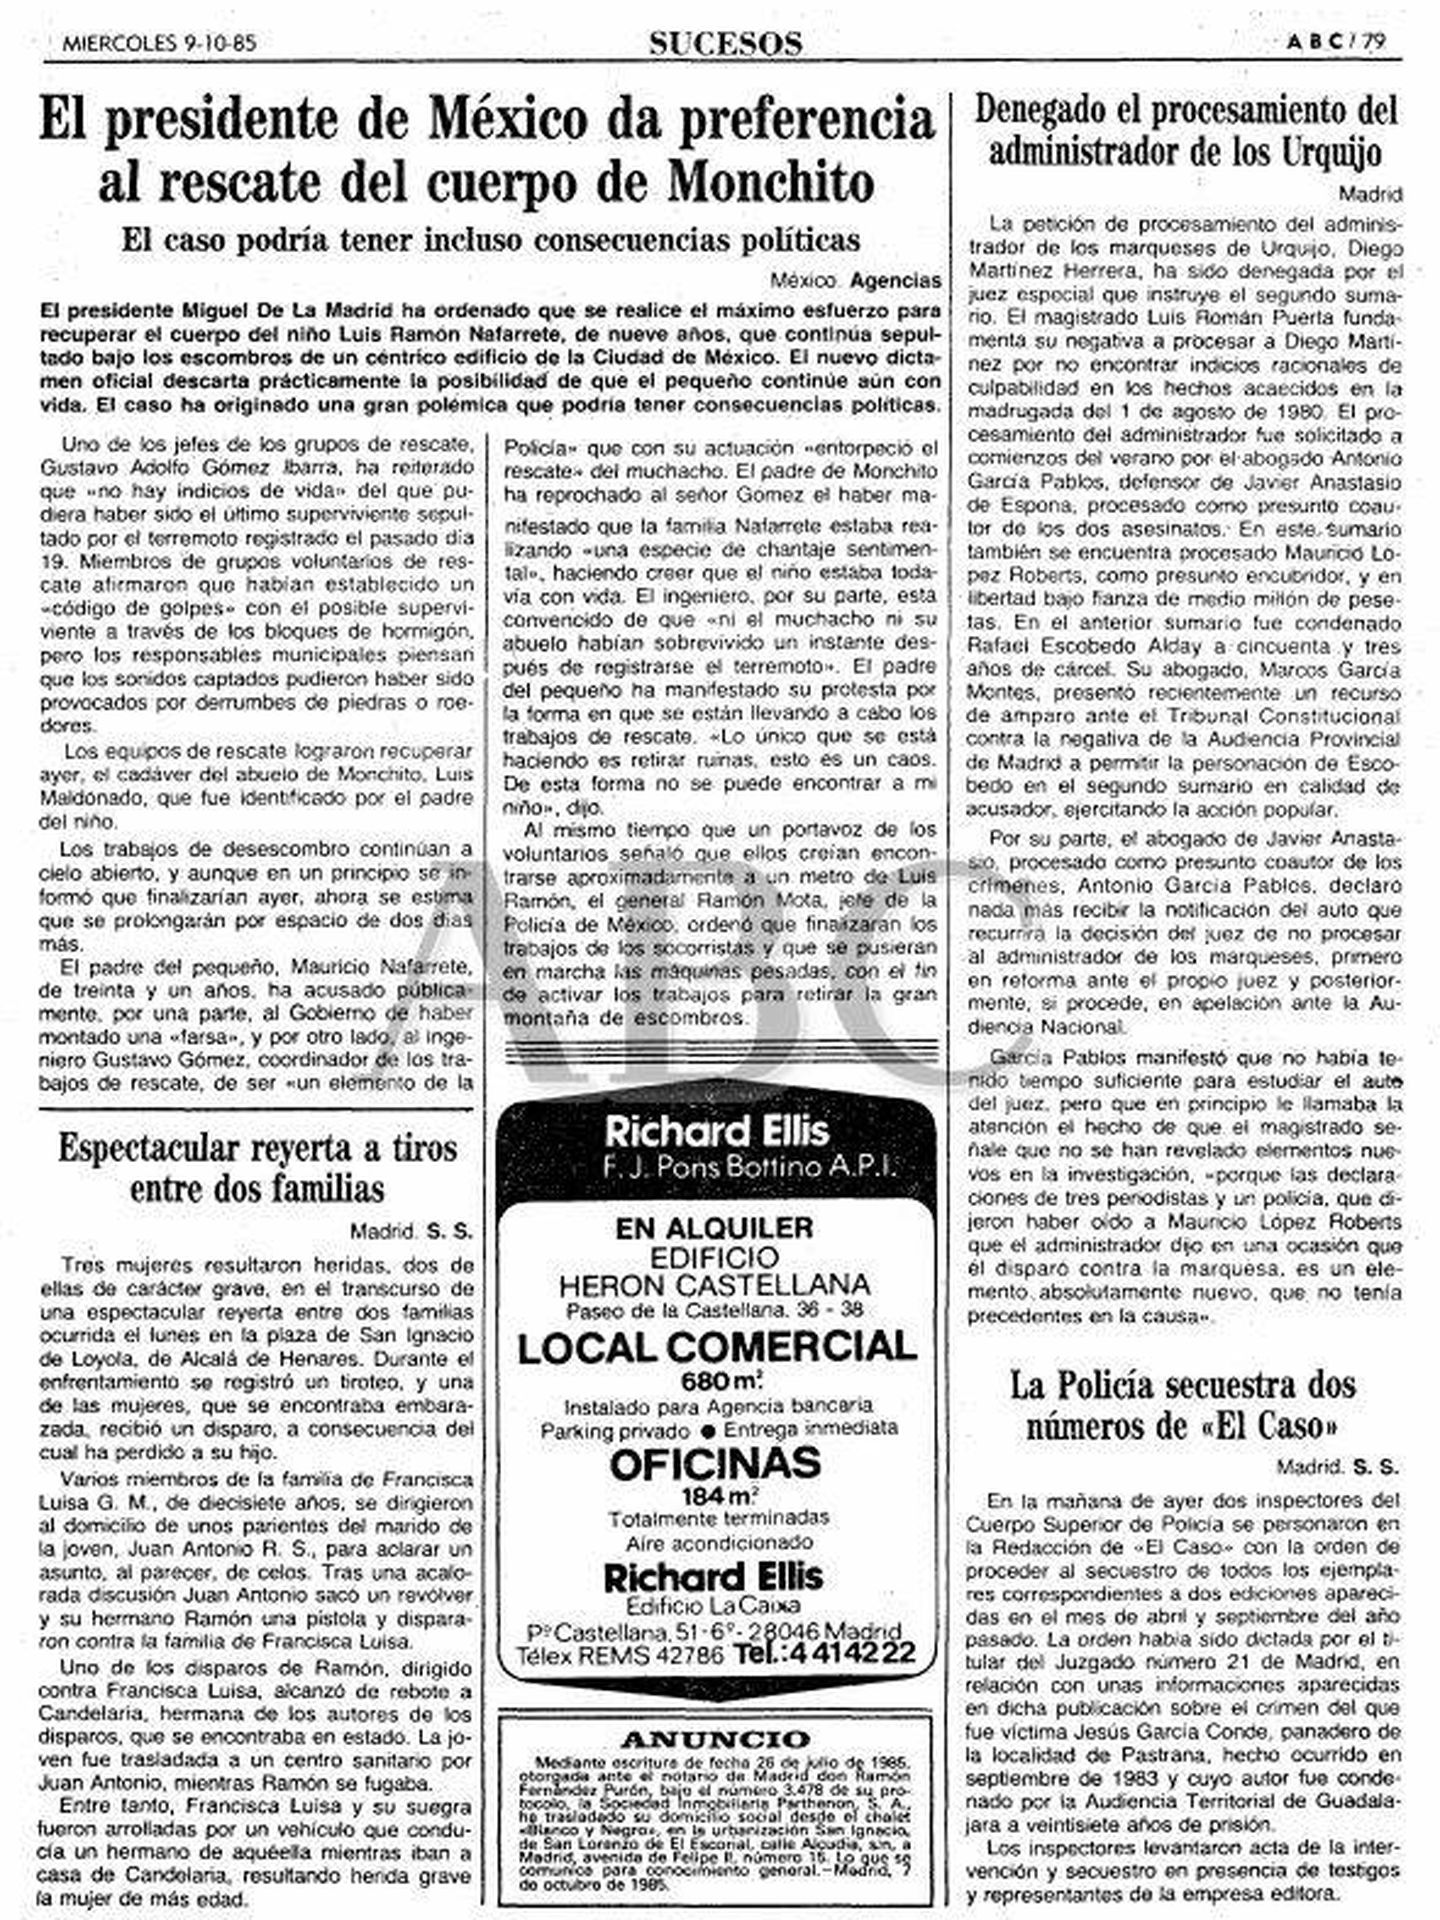 Página de ABC sobre el rescate de 'Monchito' en el terremoto de México de 1985